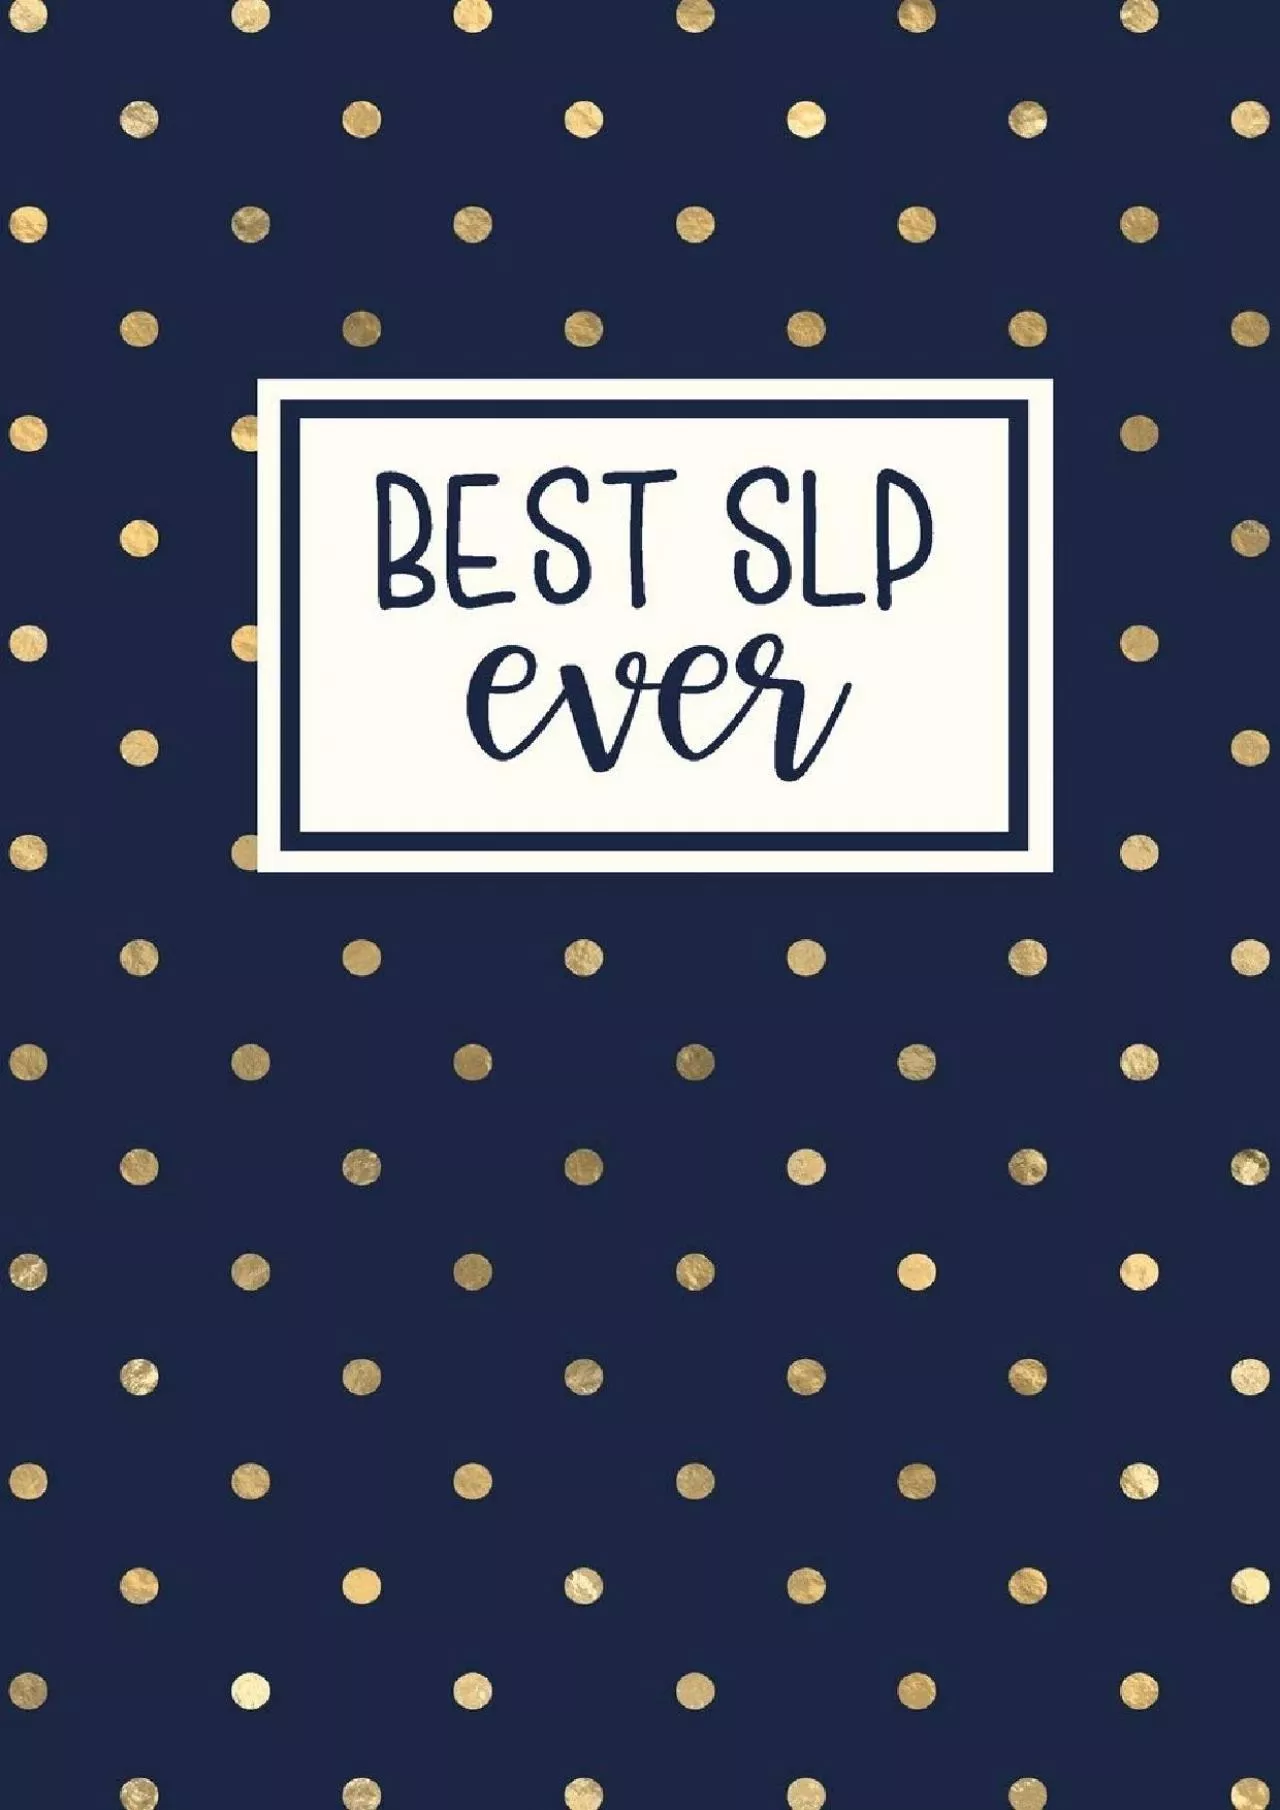 (DOWNLOAD)-Best SLP Ever: Speech Therapist Notebook | SLP Gifts | Blank Lined Journal